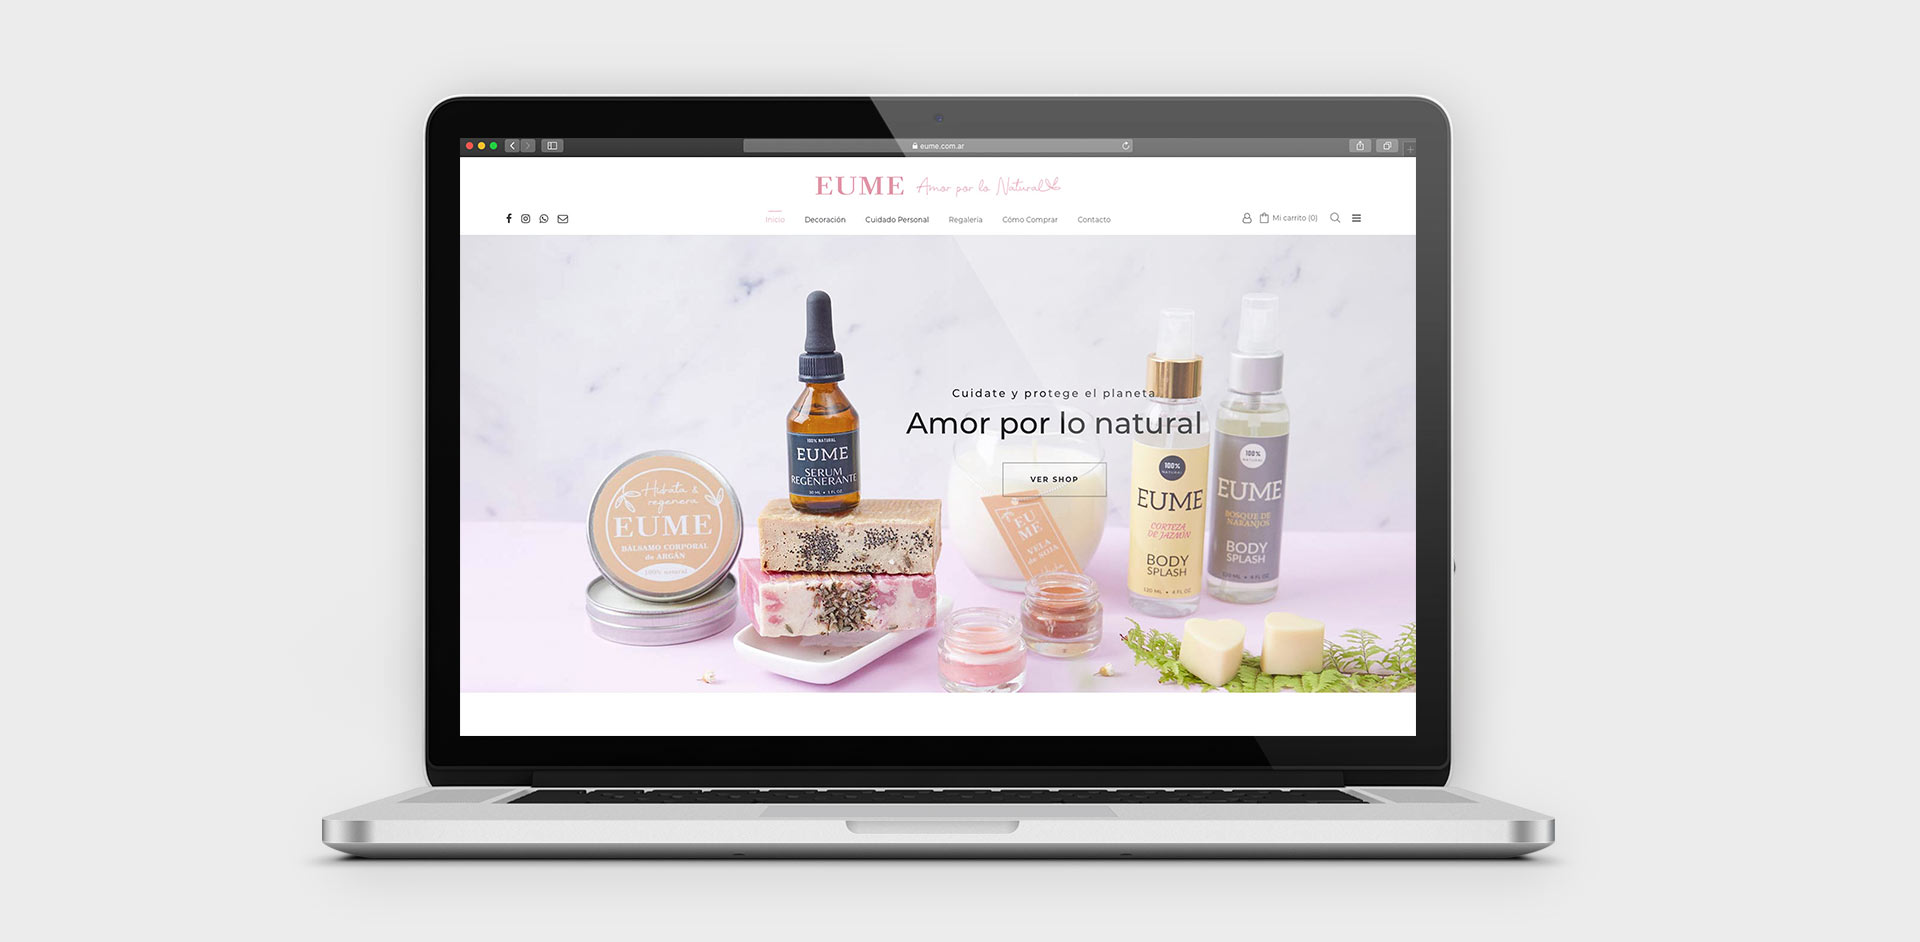 Diseño y desarrollo de una tienda online / ecommerce para Eume cosmética natural. By OKD Estudio